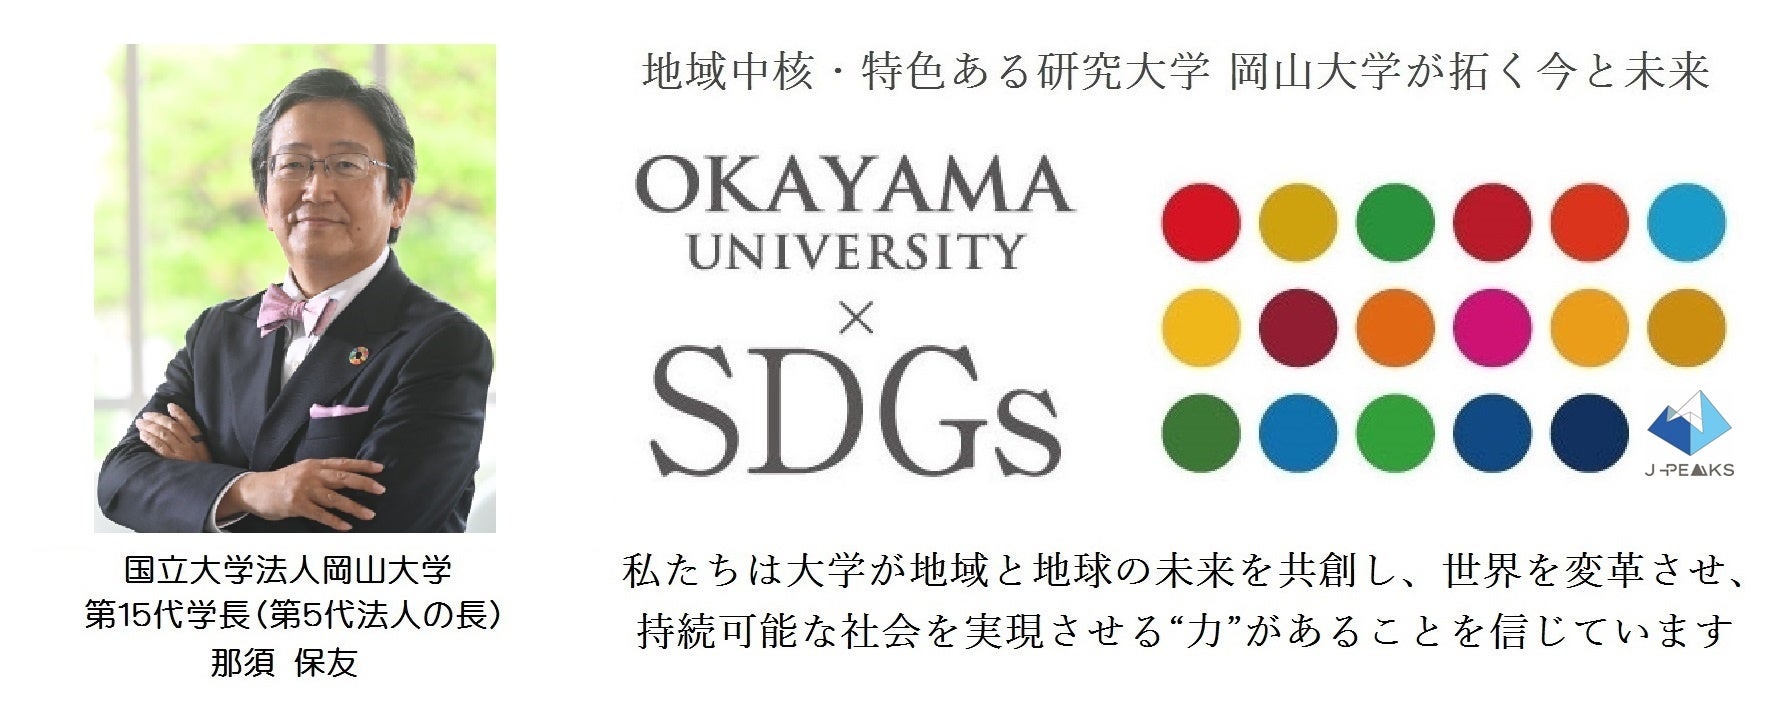 【岡山大学】岡山大学医学部主催DXセミナー「医学研究における人工知能の応用」を開催しました